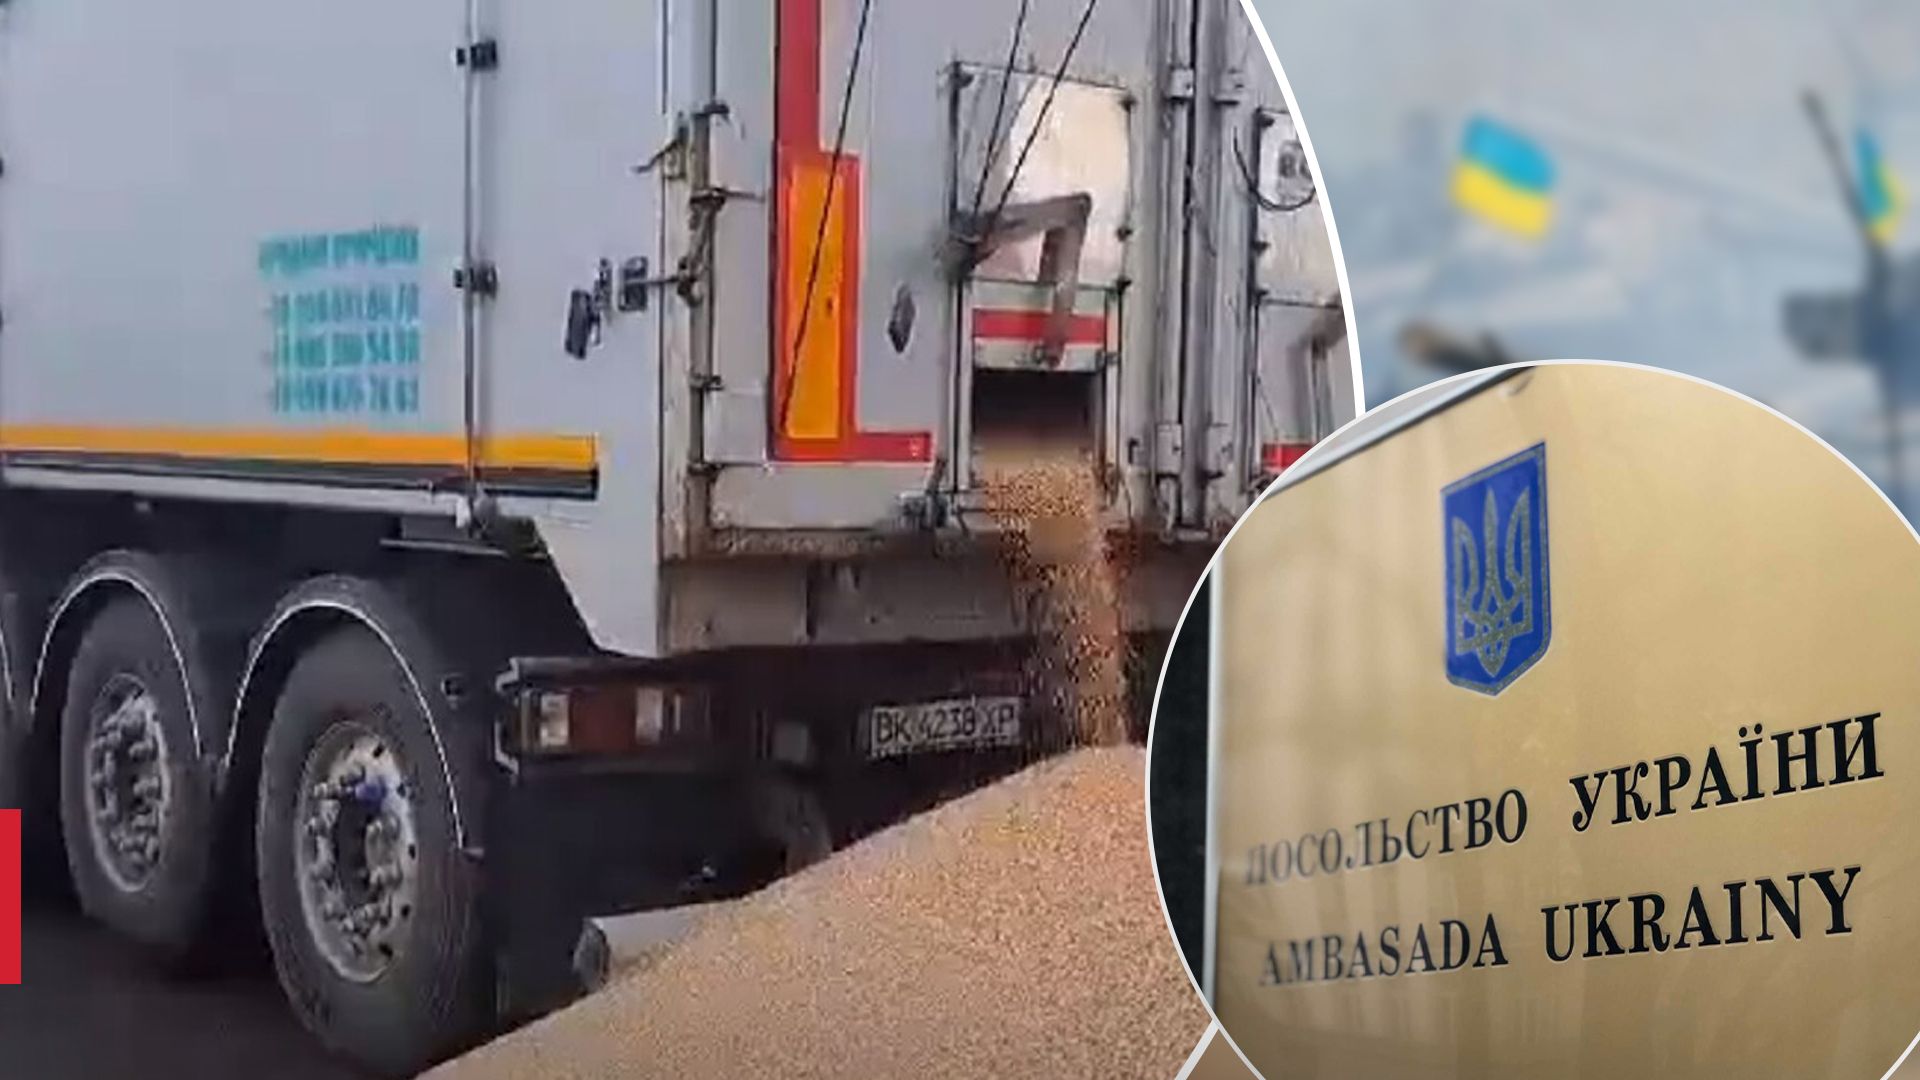 Посольство Украины в Польше обратилось в полицию из-за инцидента с рассыпанным зерном - 24 Канал